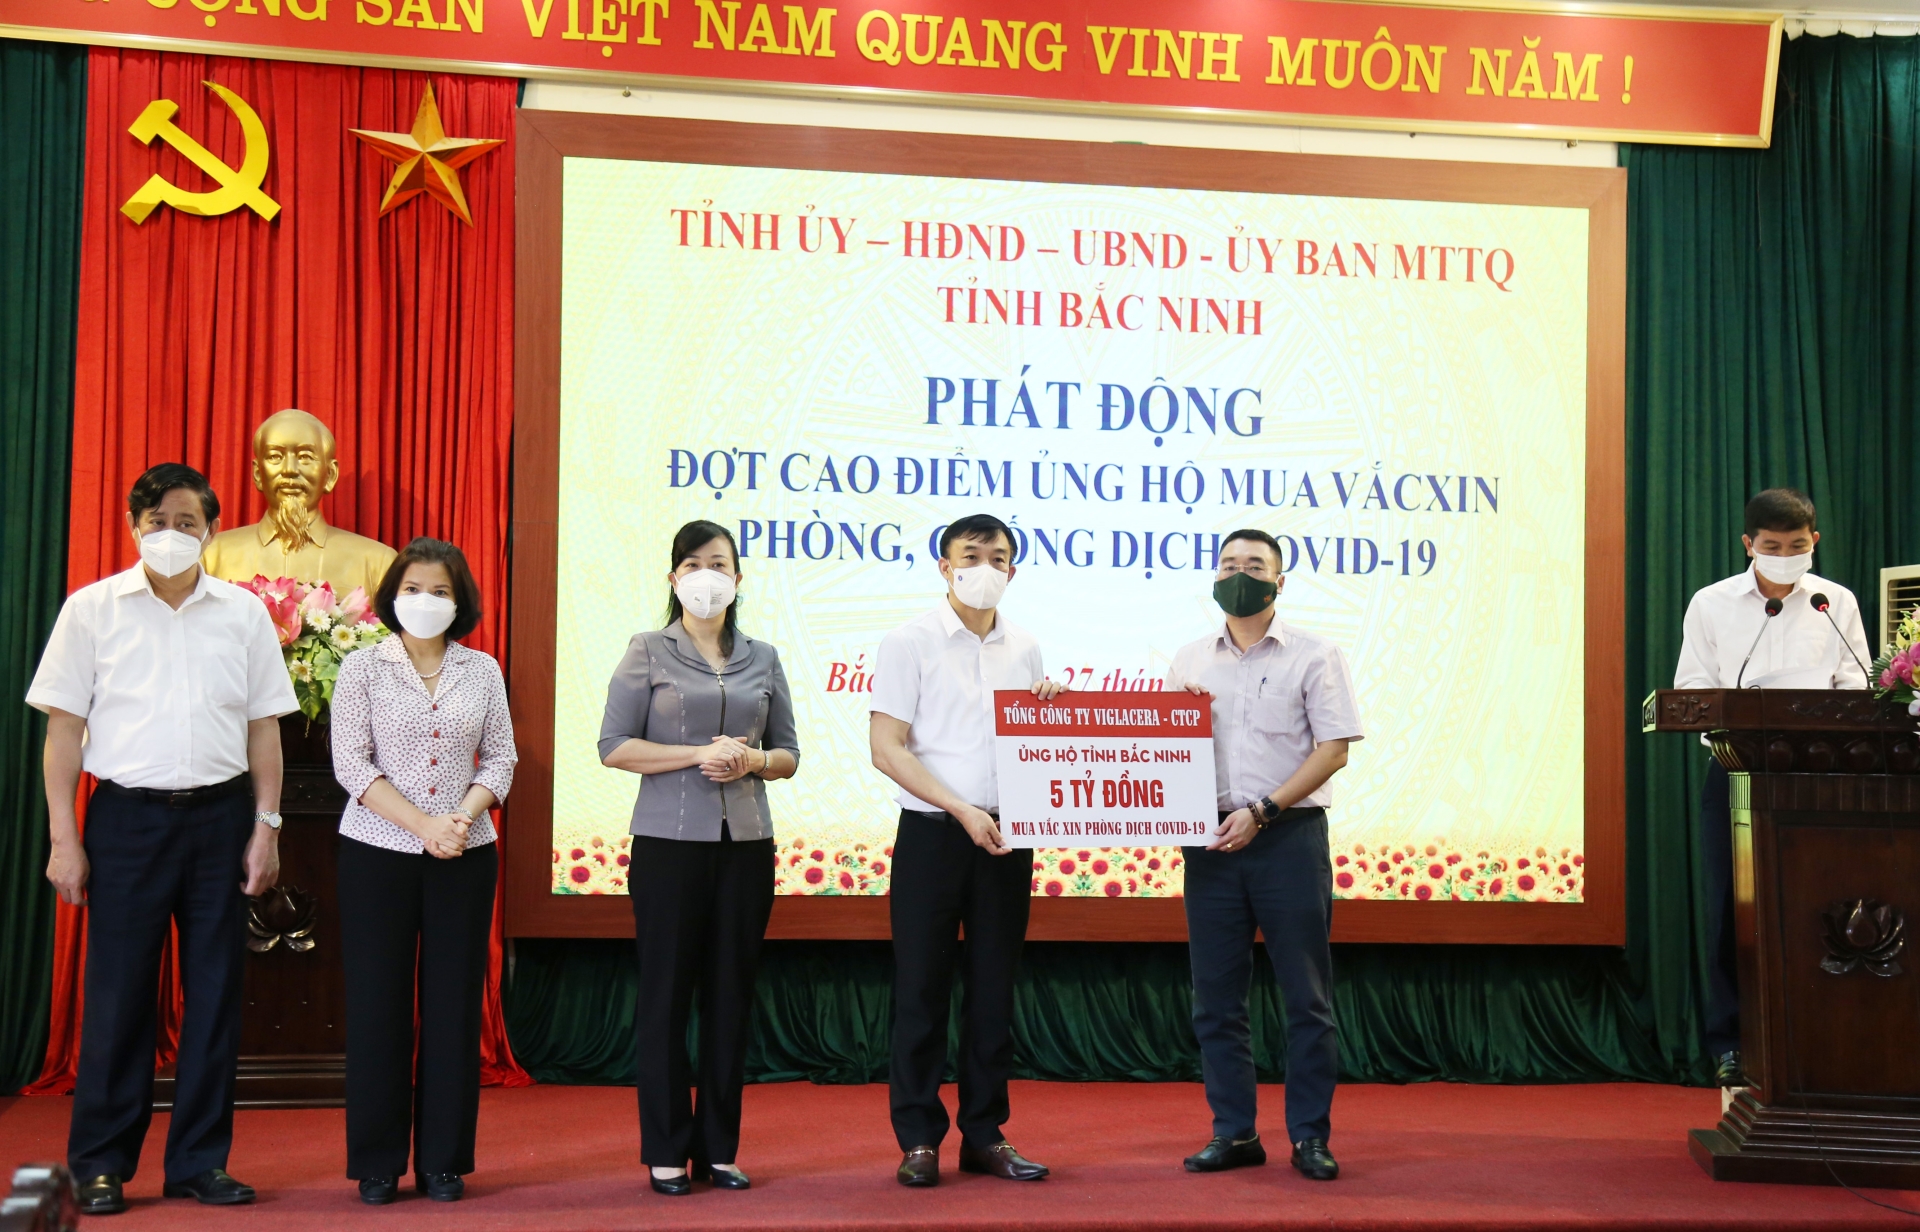 Tổng công ty Viglacera chung tay hỗ trợ Bắc Ninh chống dịch